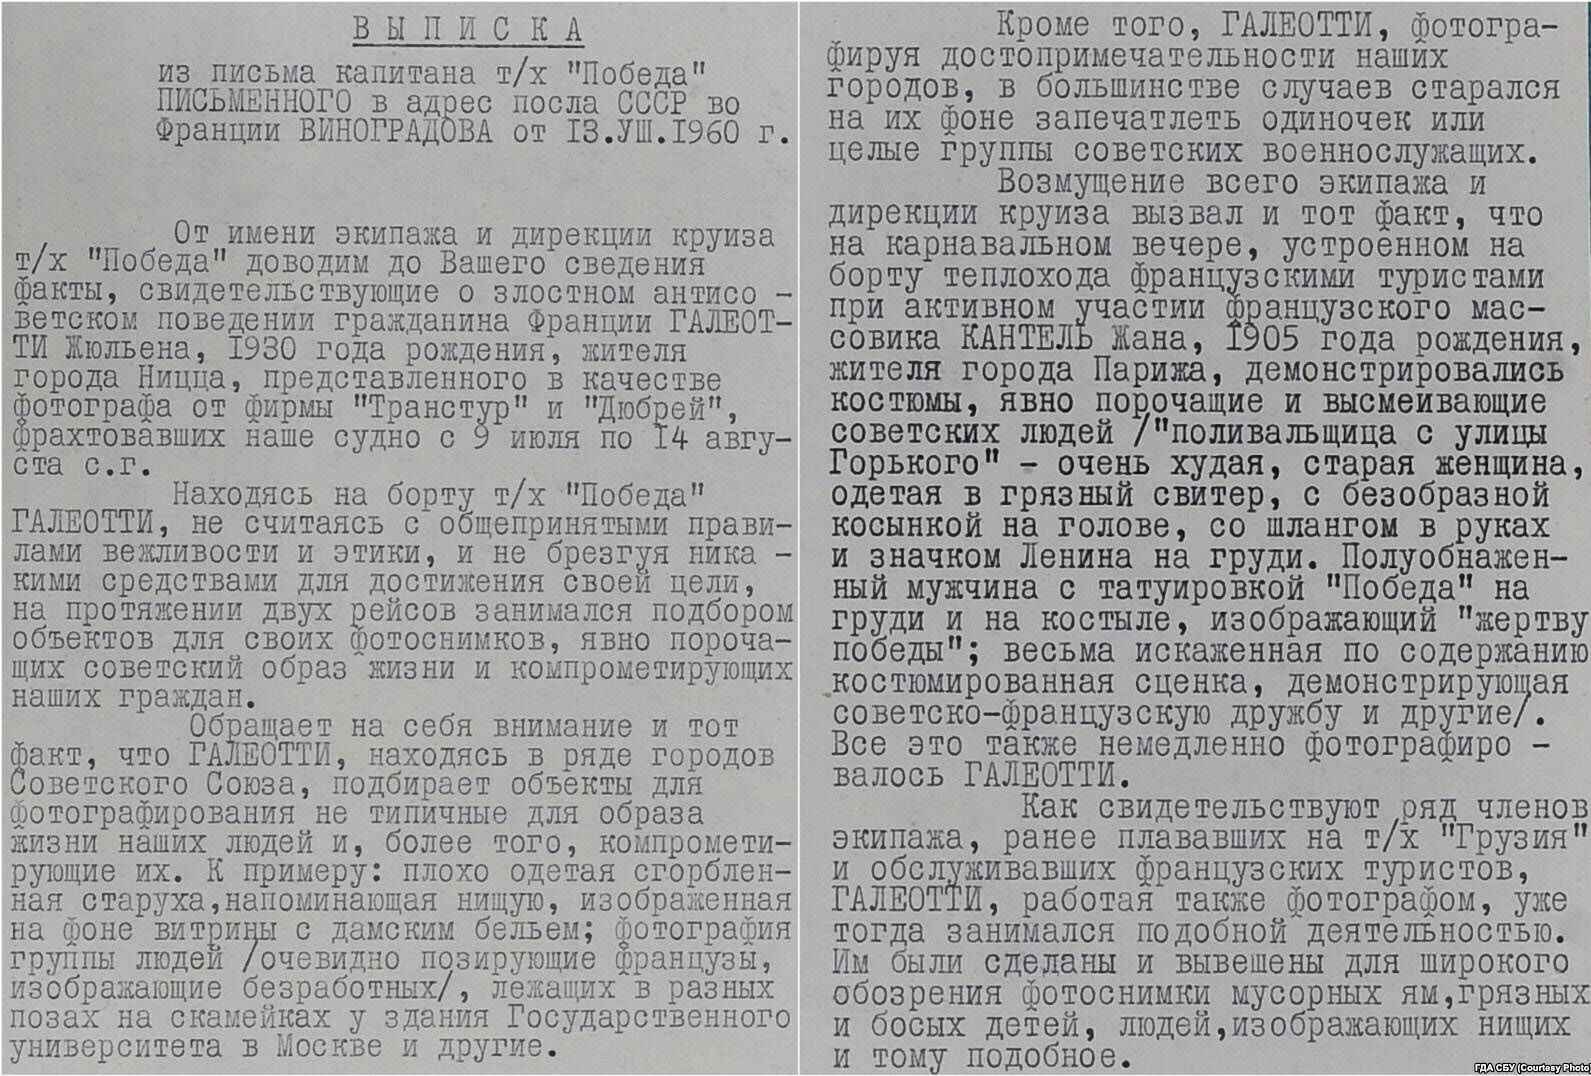 Выписка из письма капитана теплохода "Победа", написанная в июле 1960 года